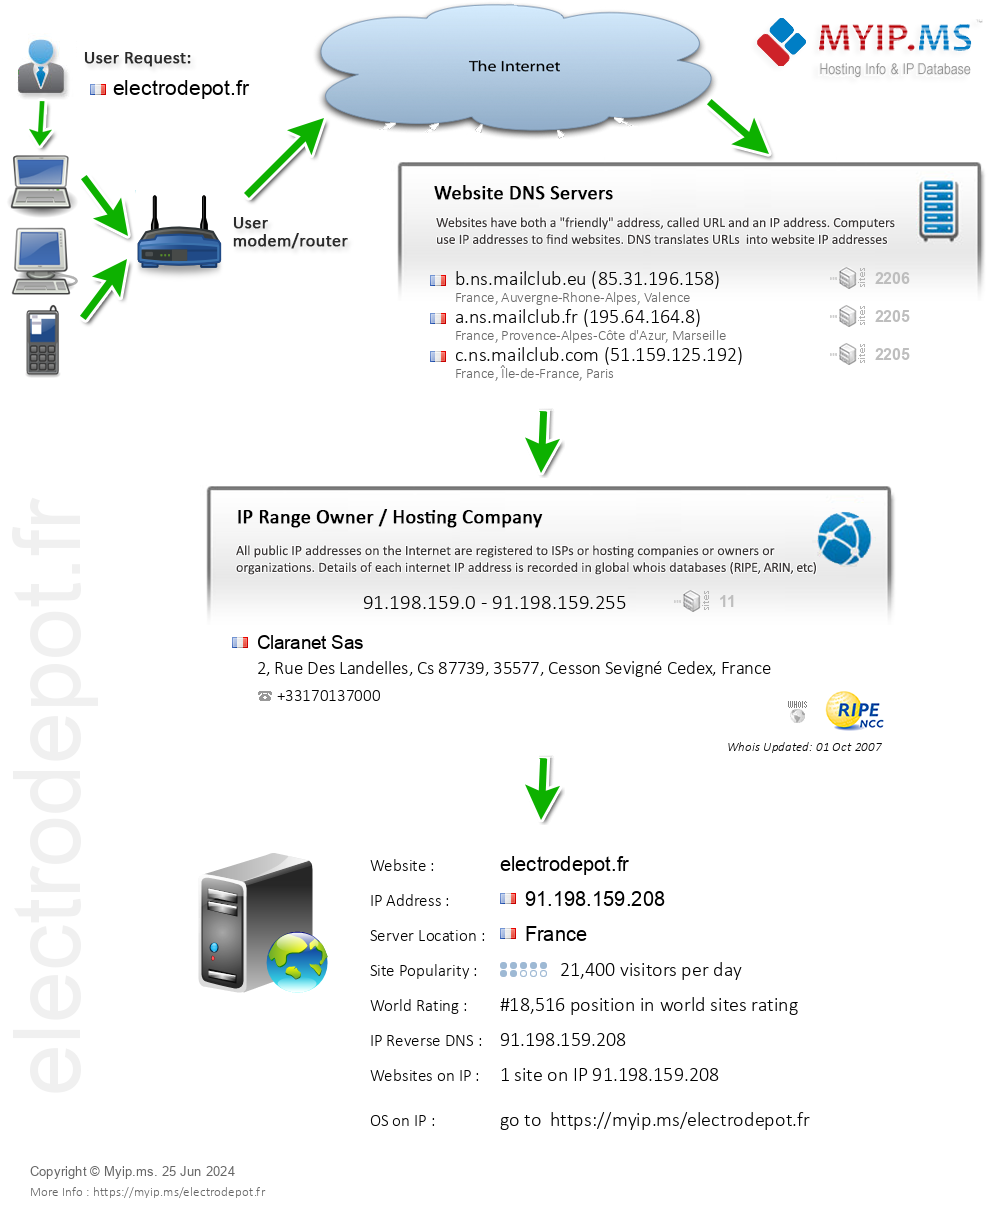 Electrodepot.fr - Website Hosting Visual IP Diagram